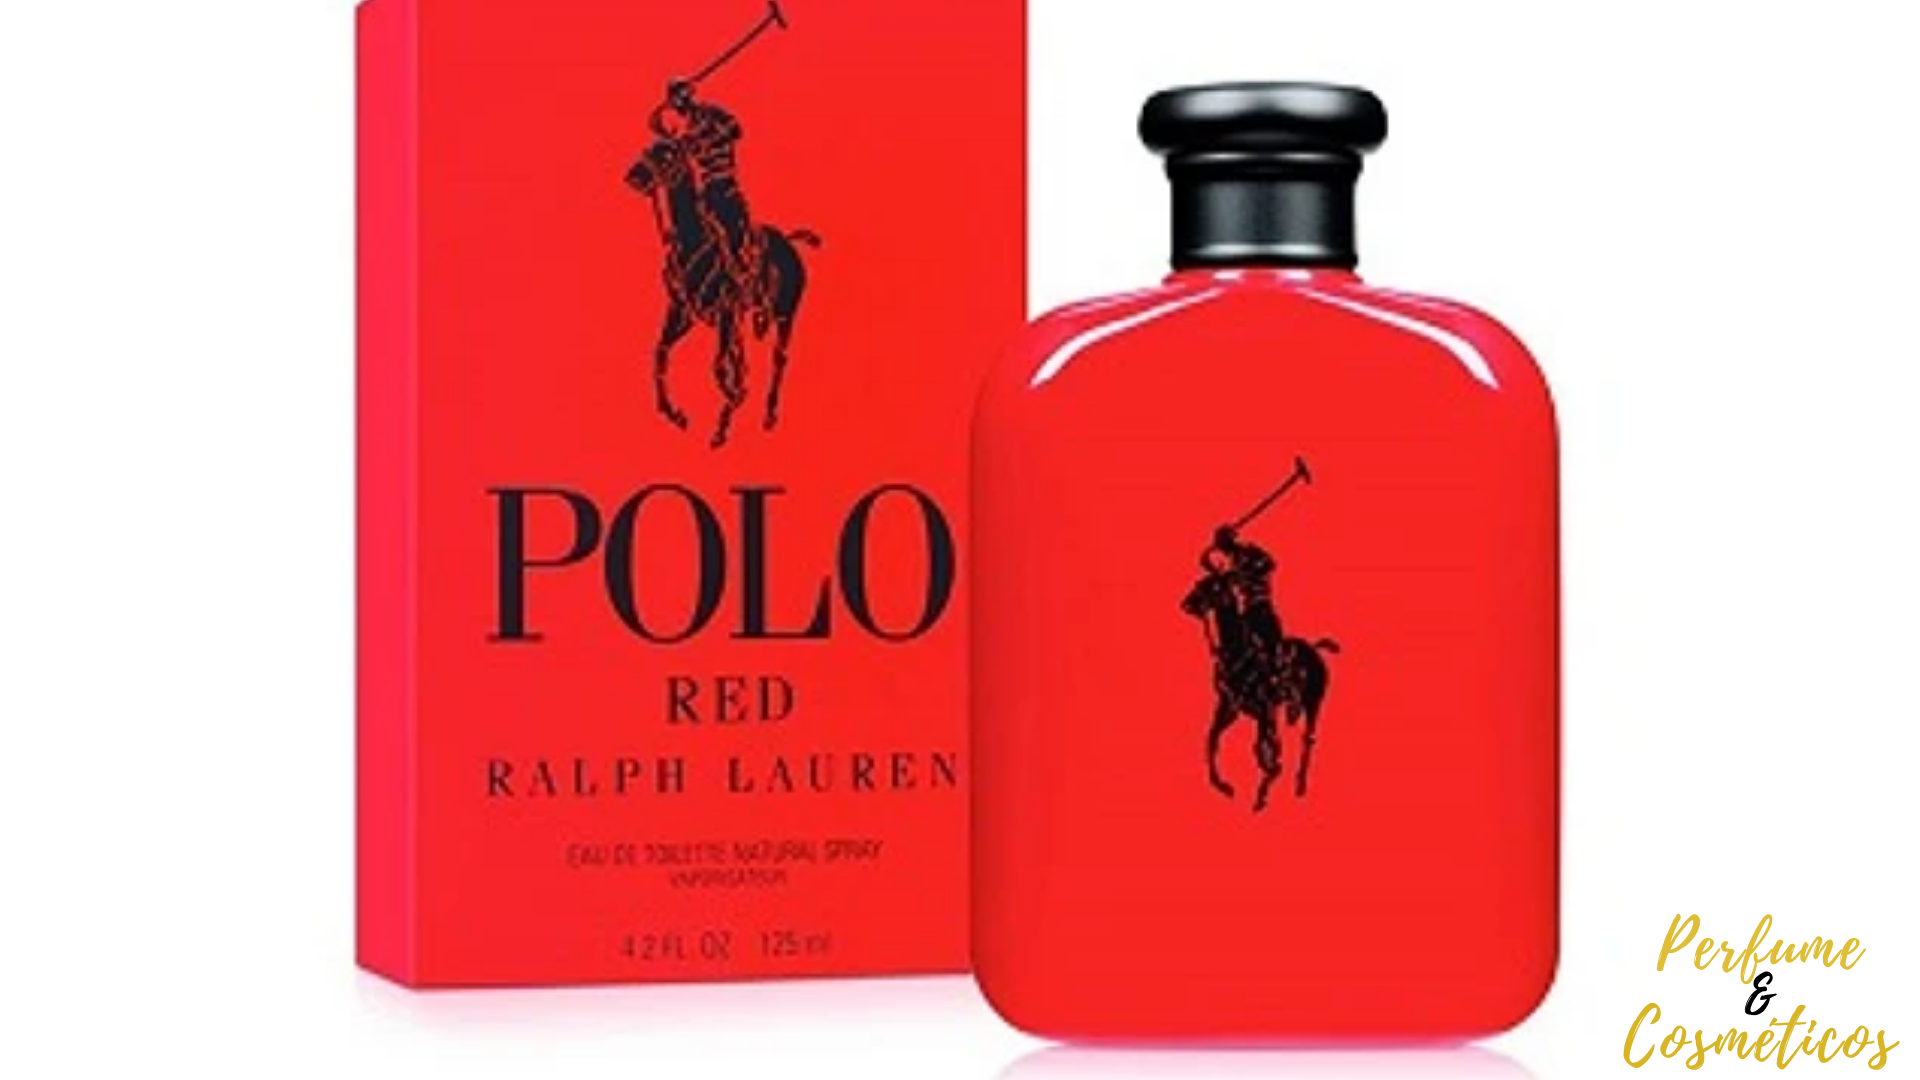 Perfume Importado: Perfume Importado Ralph Lauren Polo Red Masculino